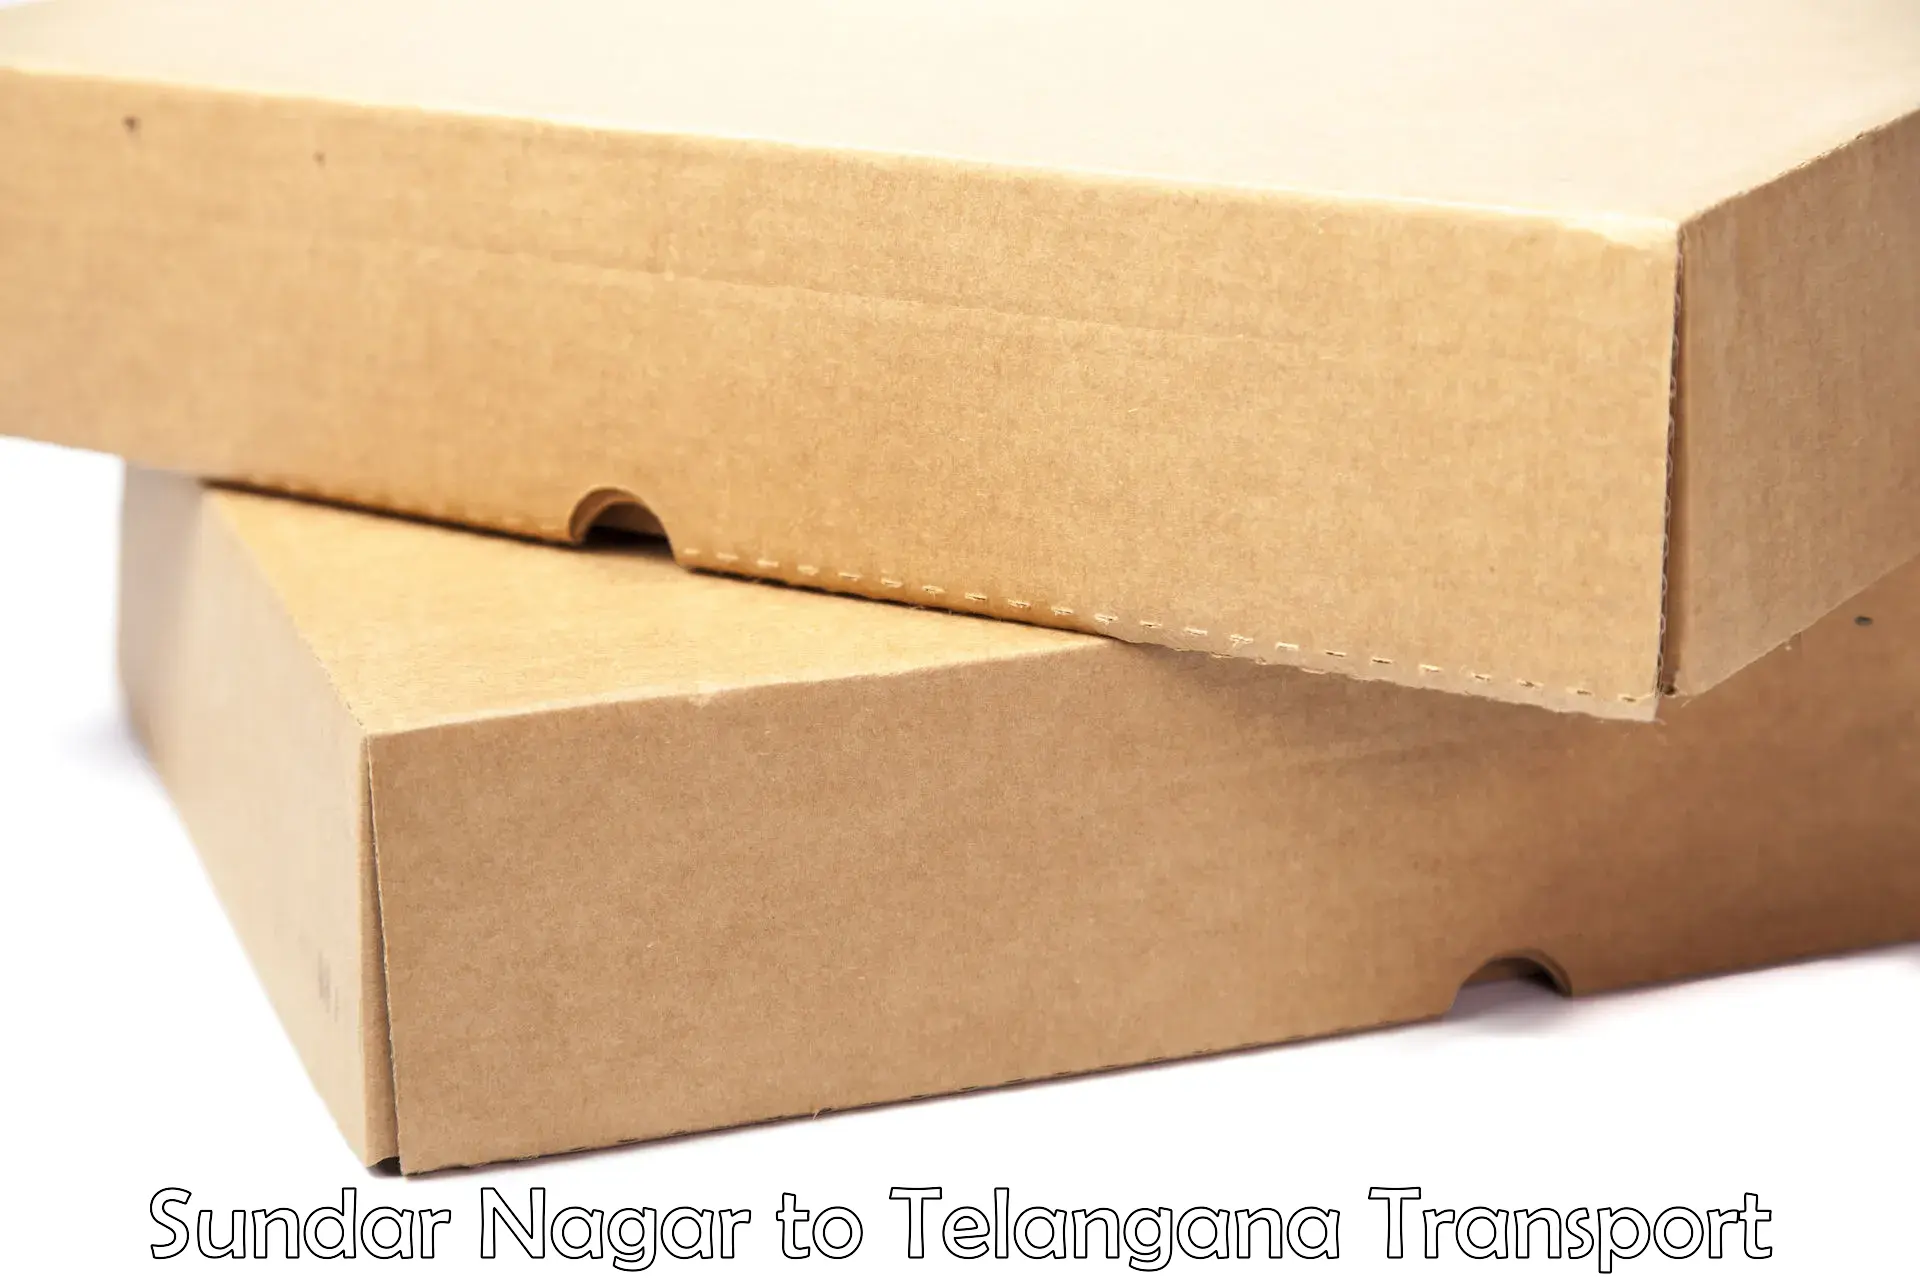 Container transport service Sundar Nagar to Jangaon